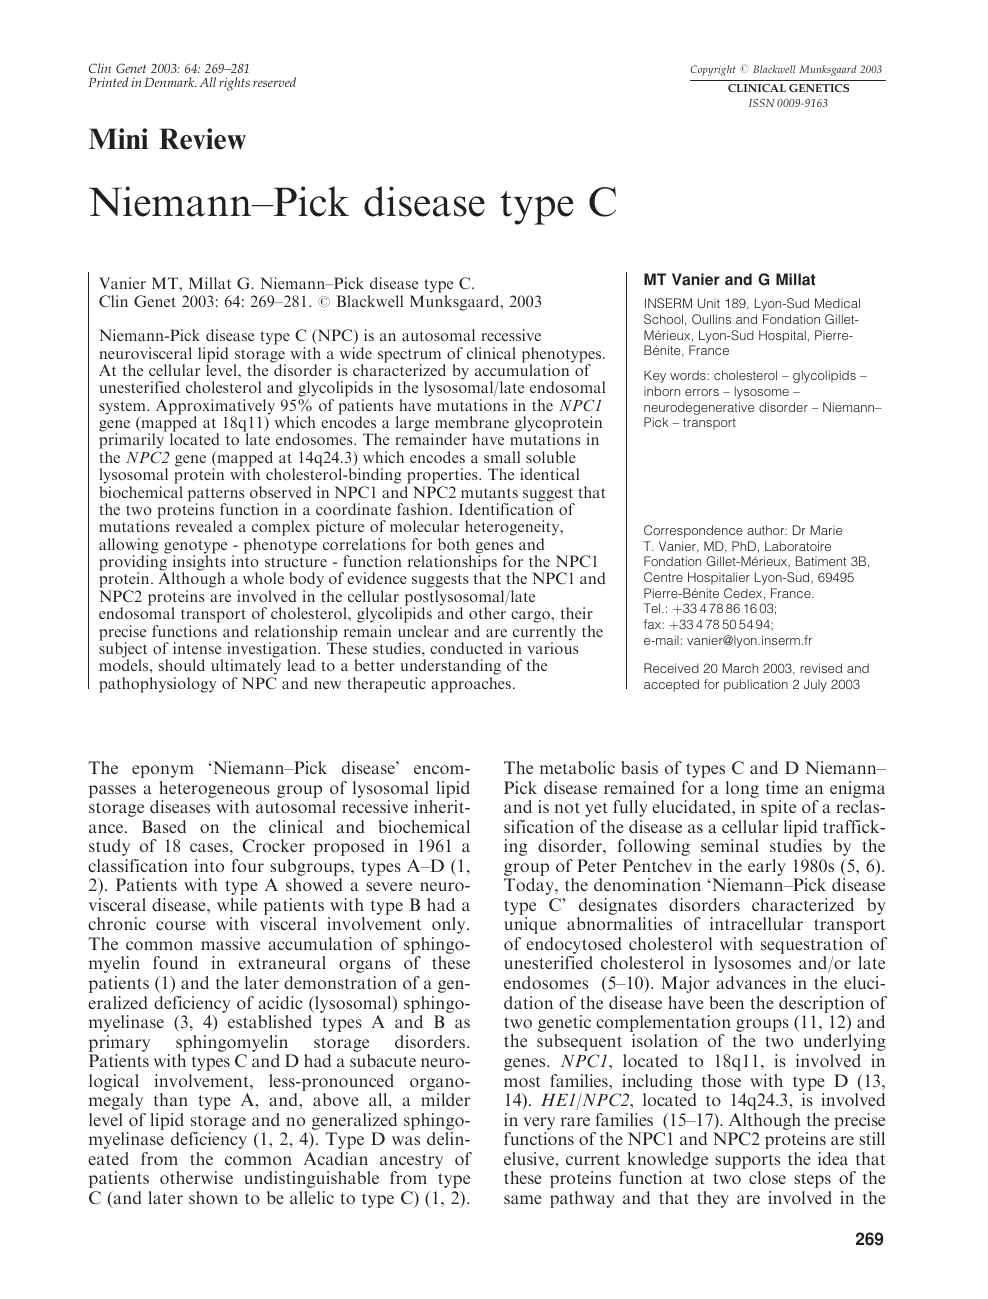 Niemann-Pick disease type C-presenting as persistent neonatal